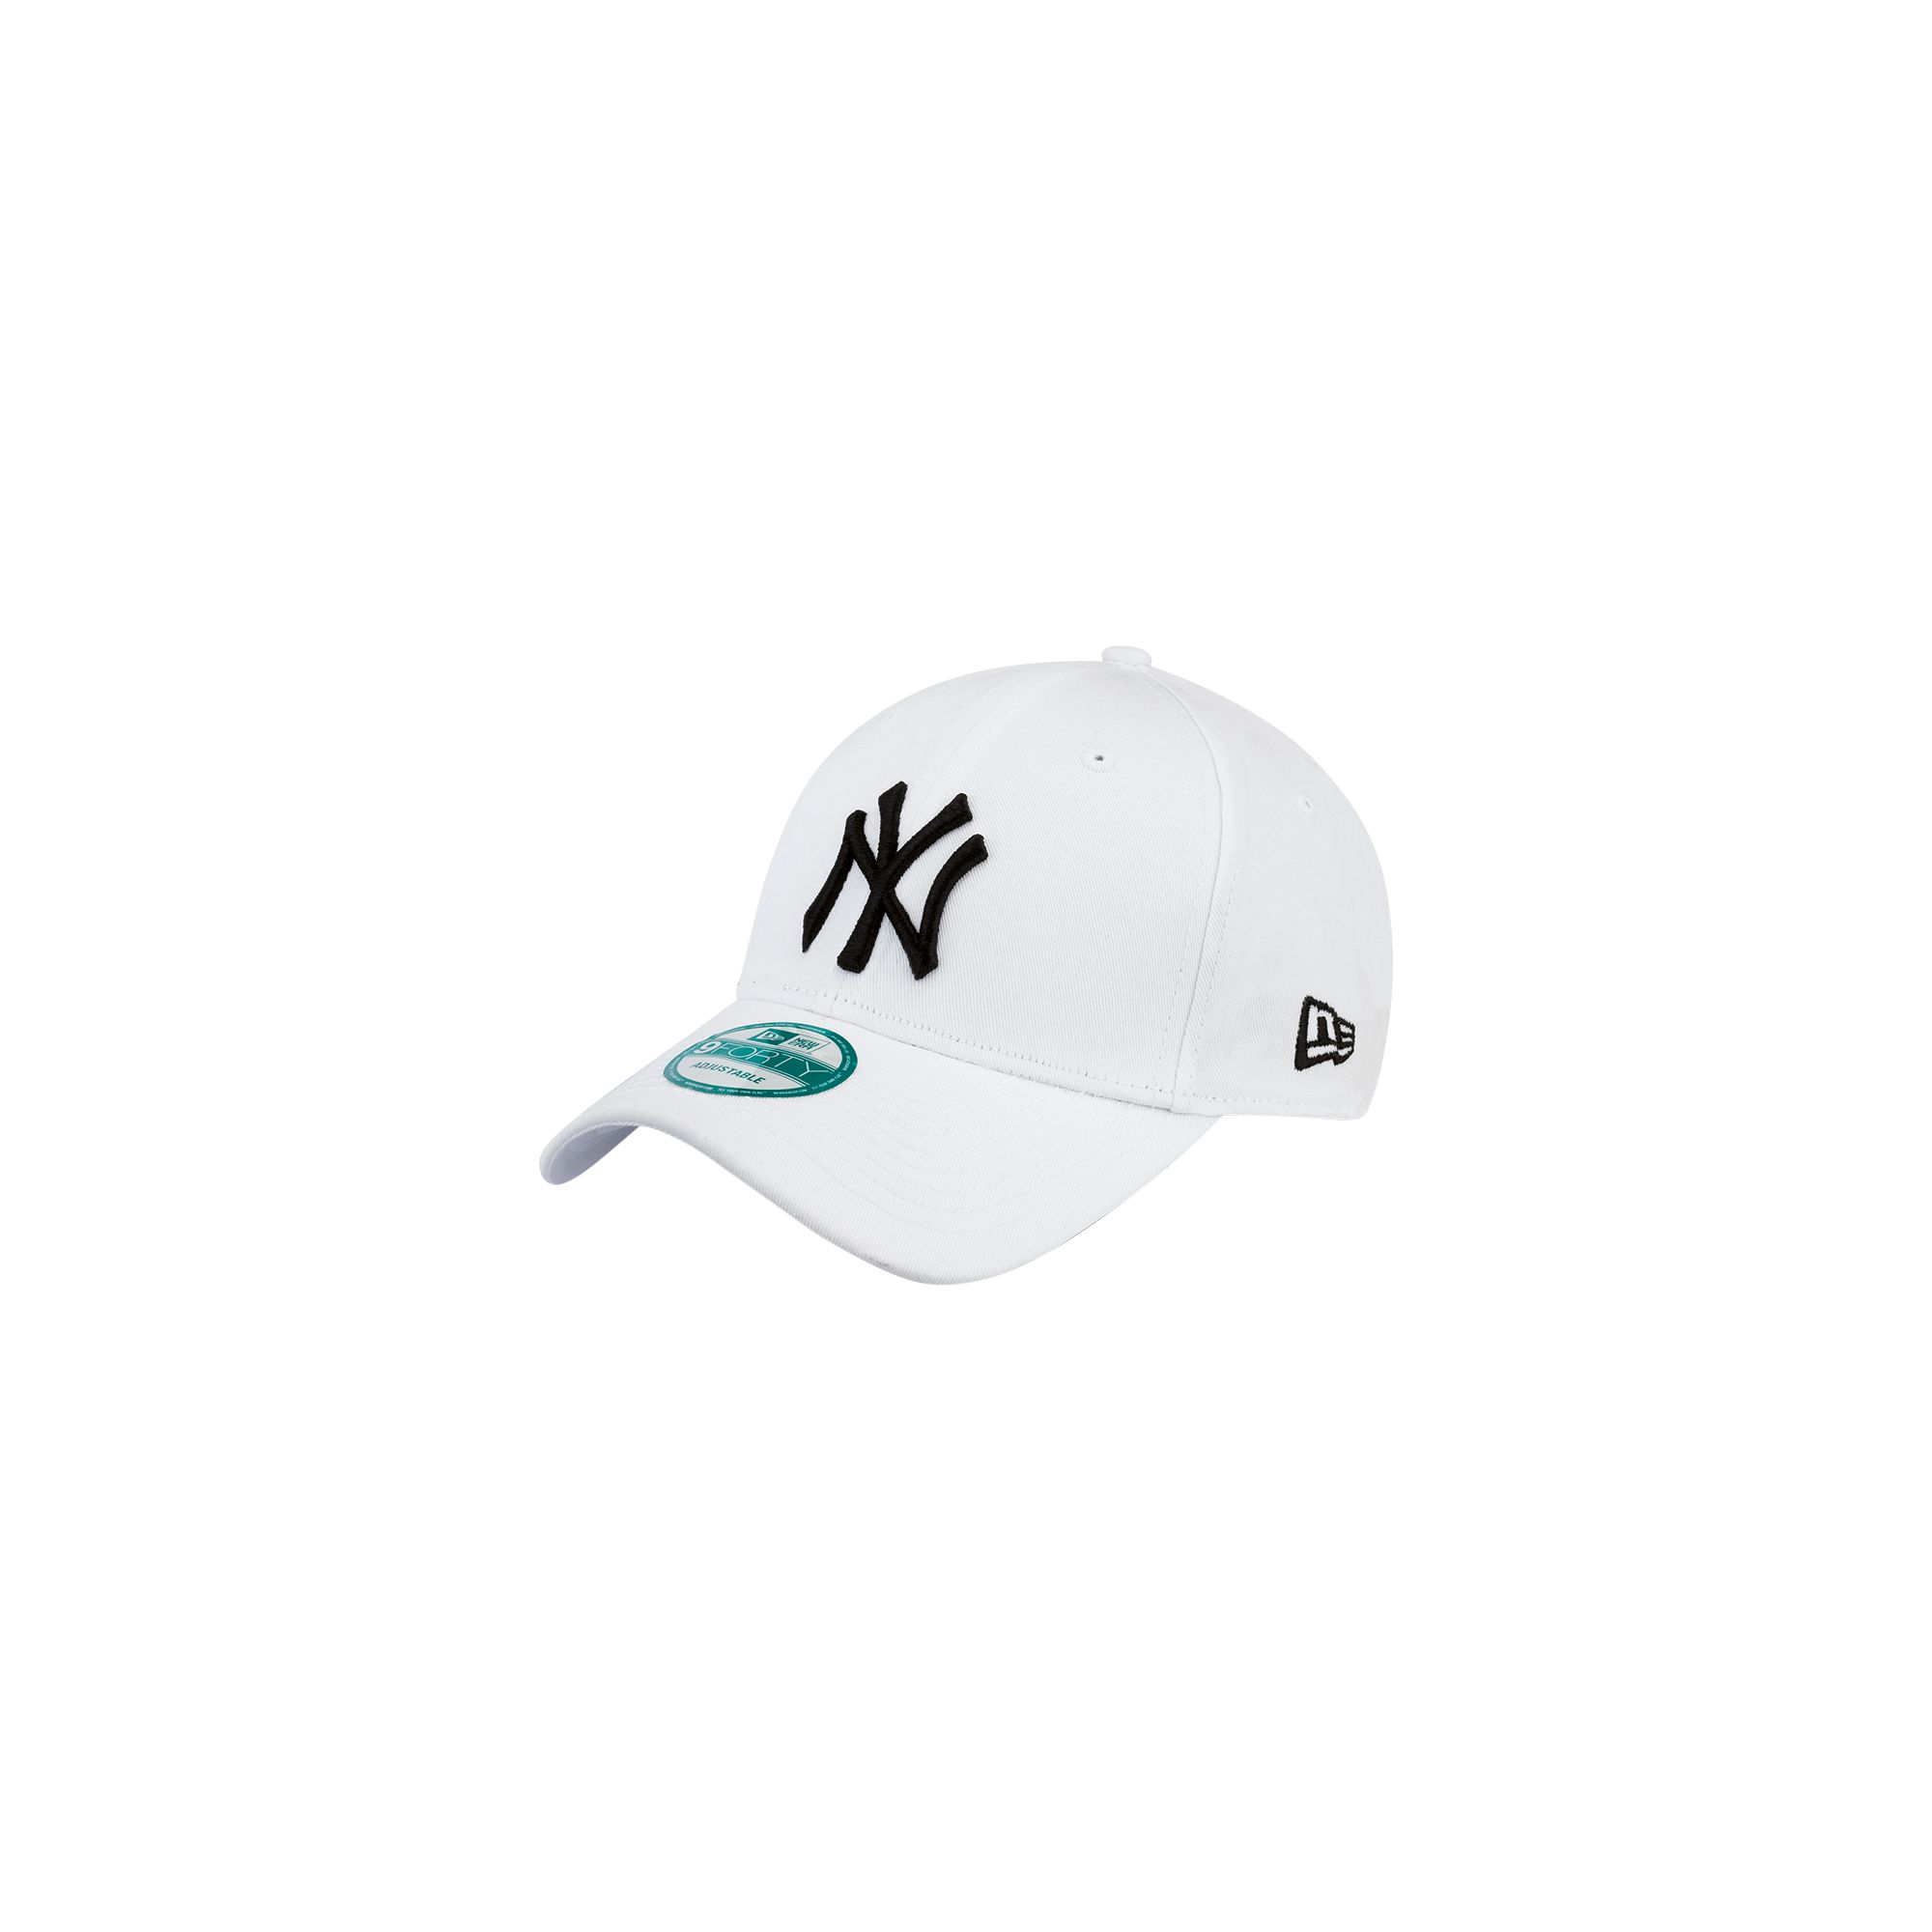 NY Yankees 940 League